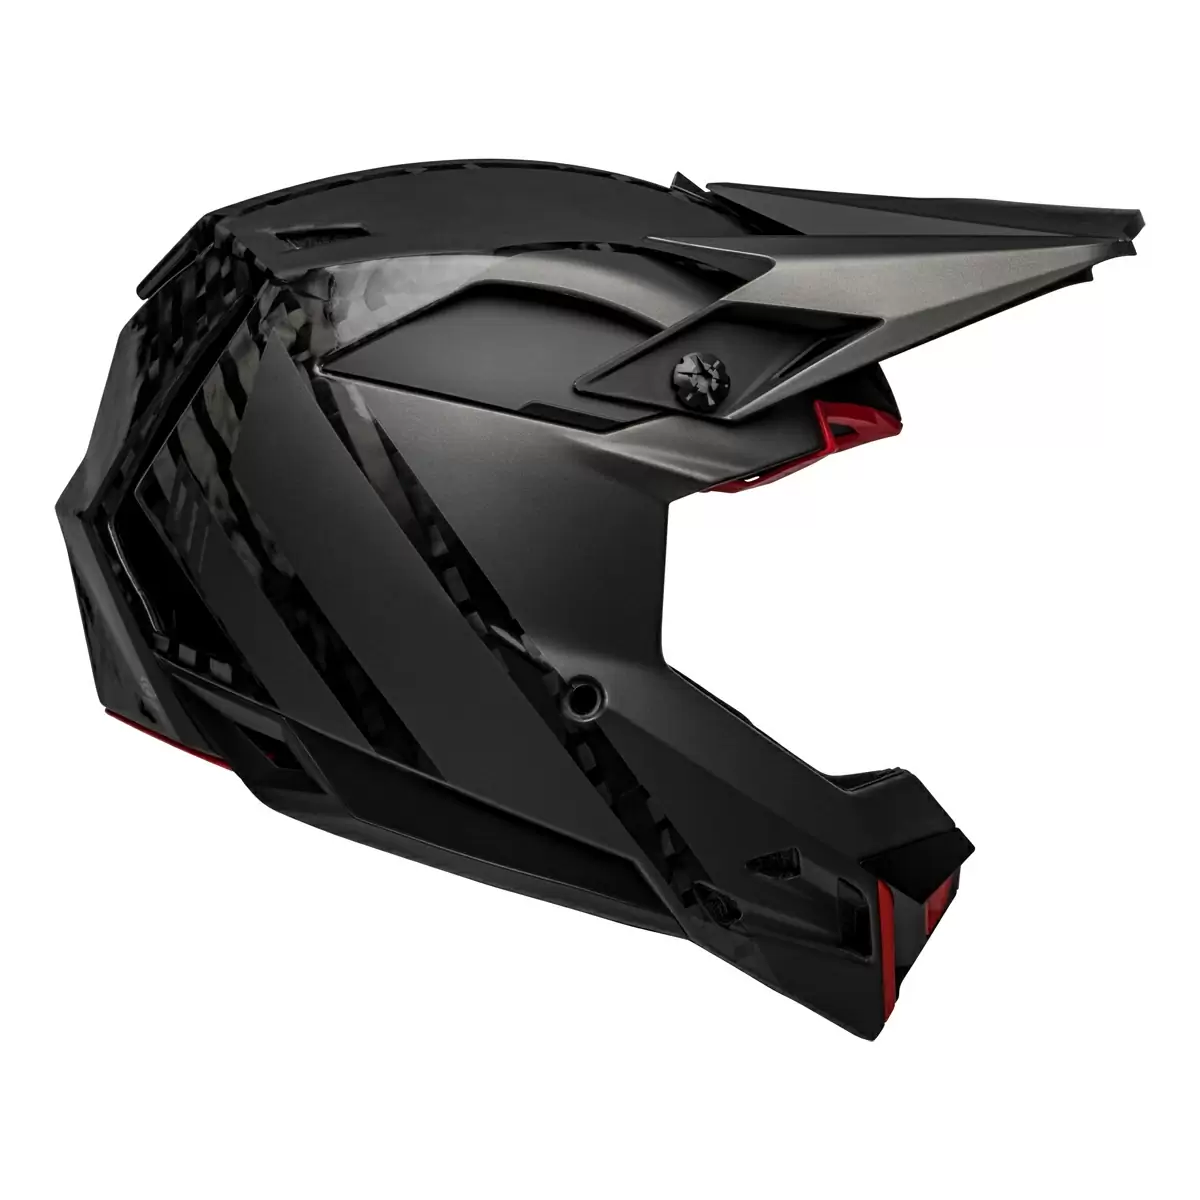 Full-10 Spherical Arise Matte / Gloss Black Carbon Full Face Helmet Size XS/S (51-55cm) #1